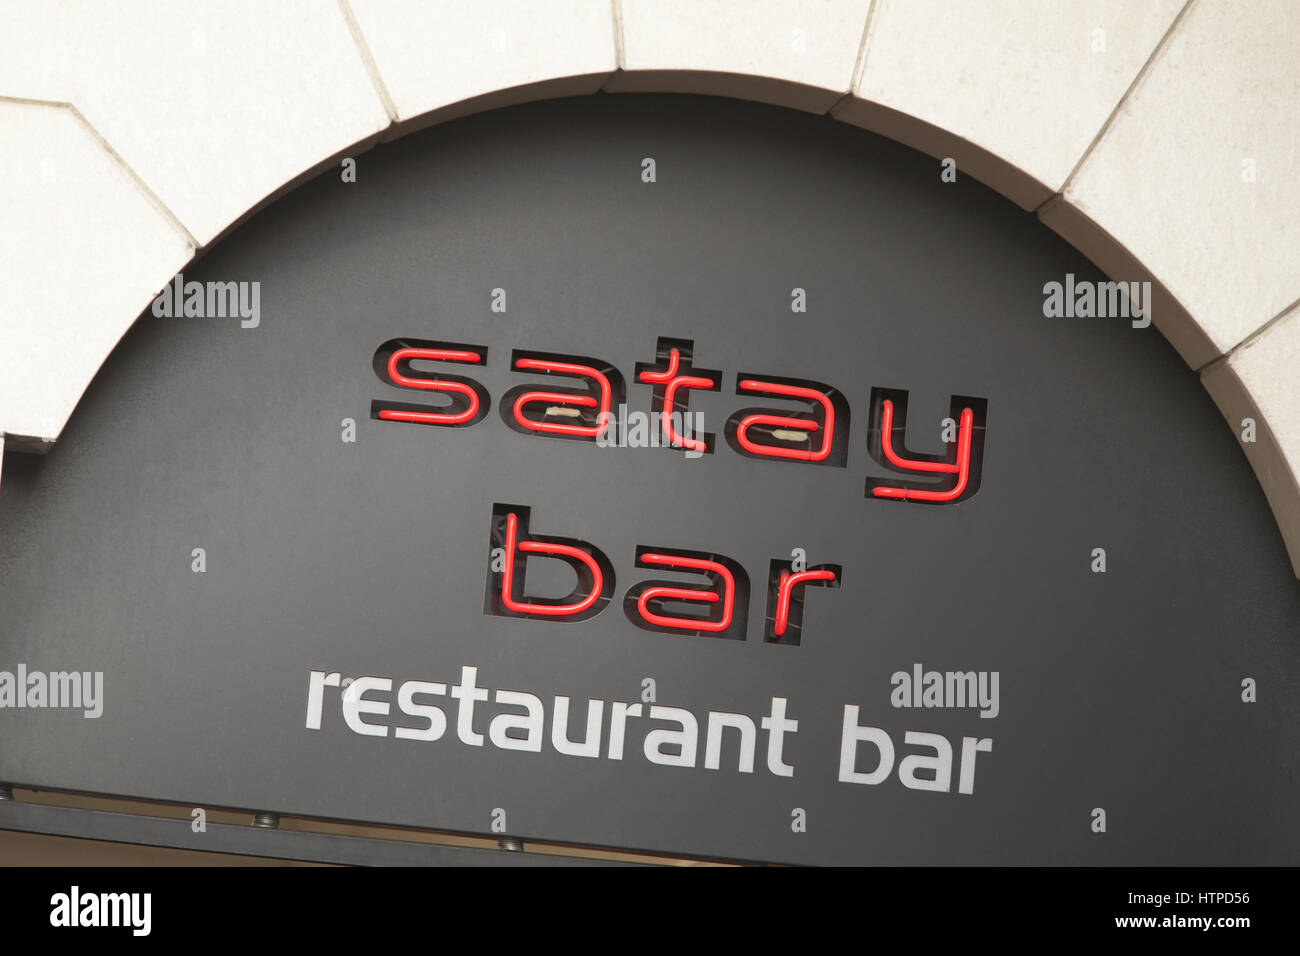 Satay bar Stock Photo